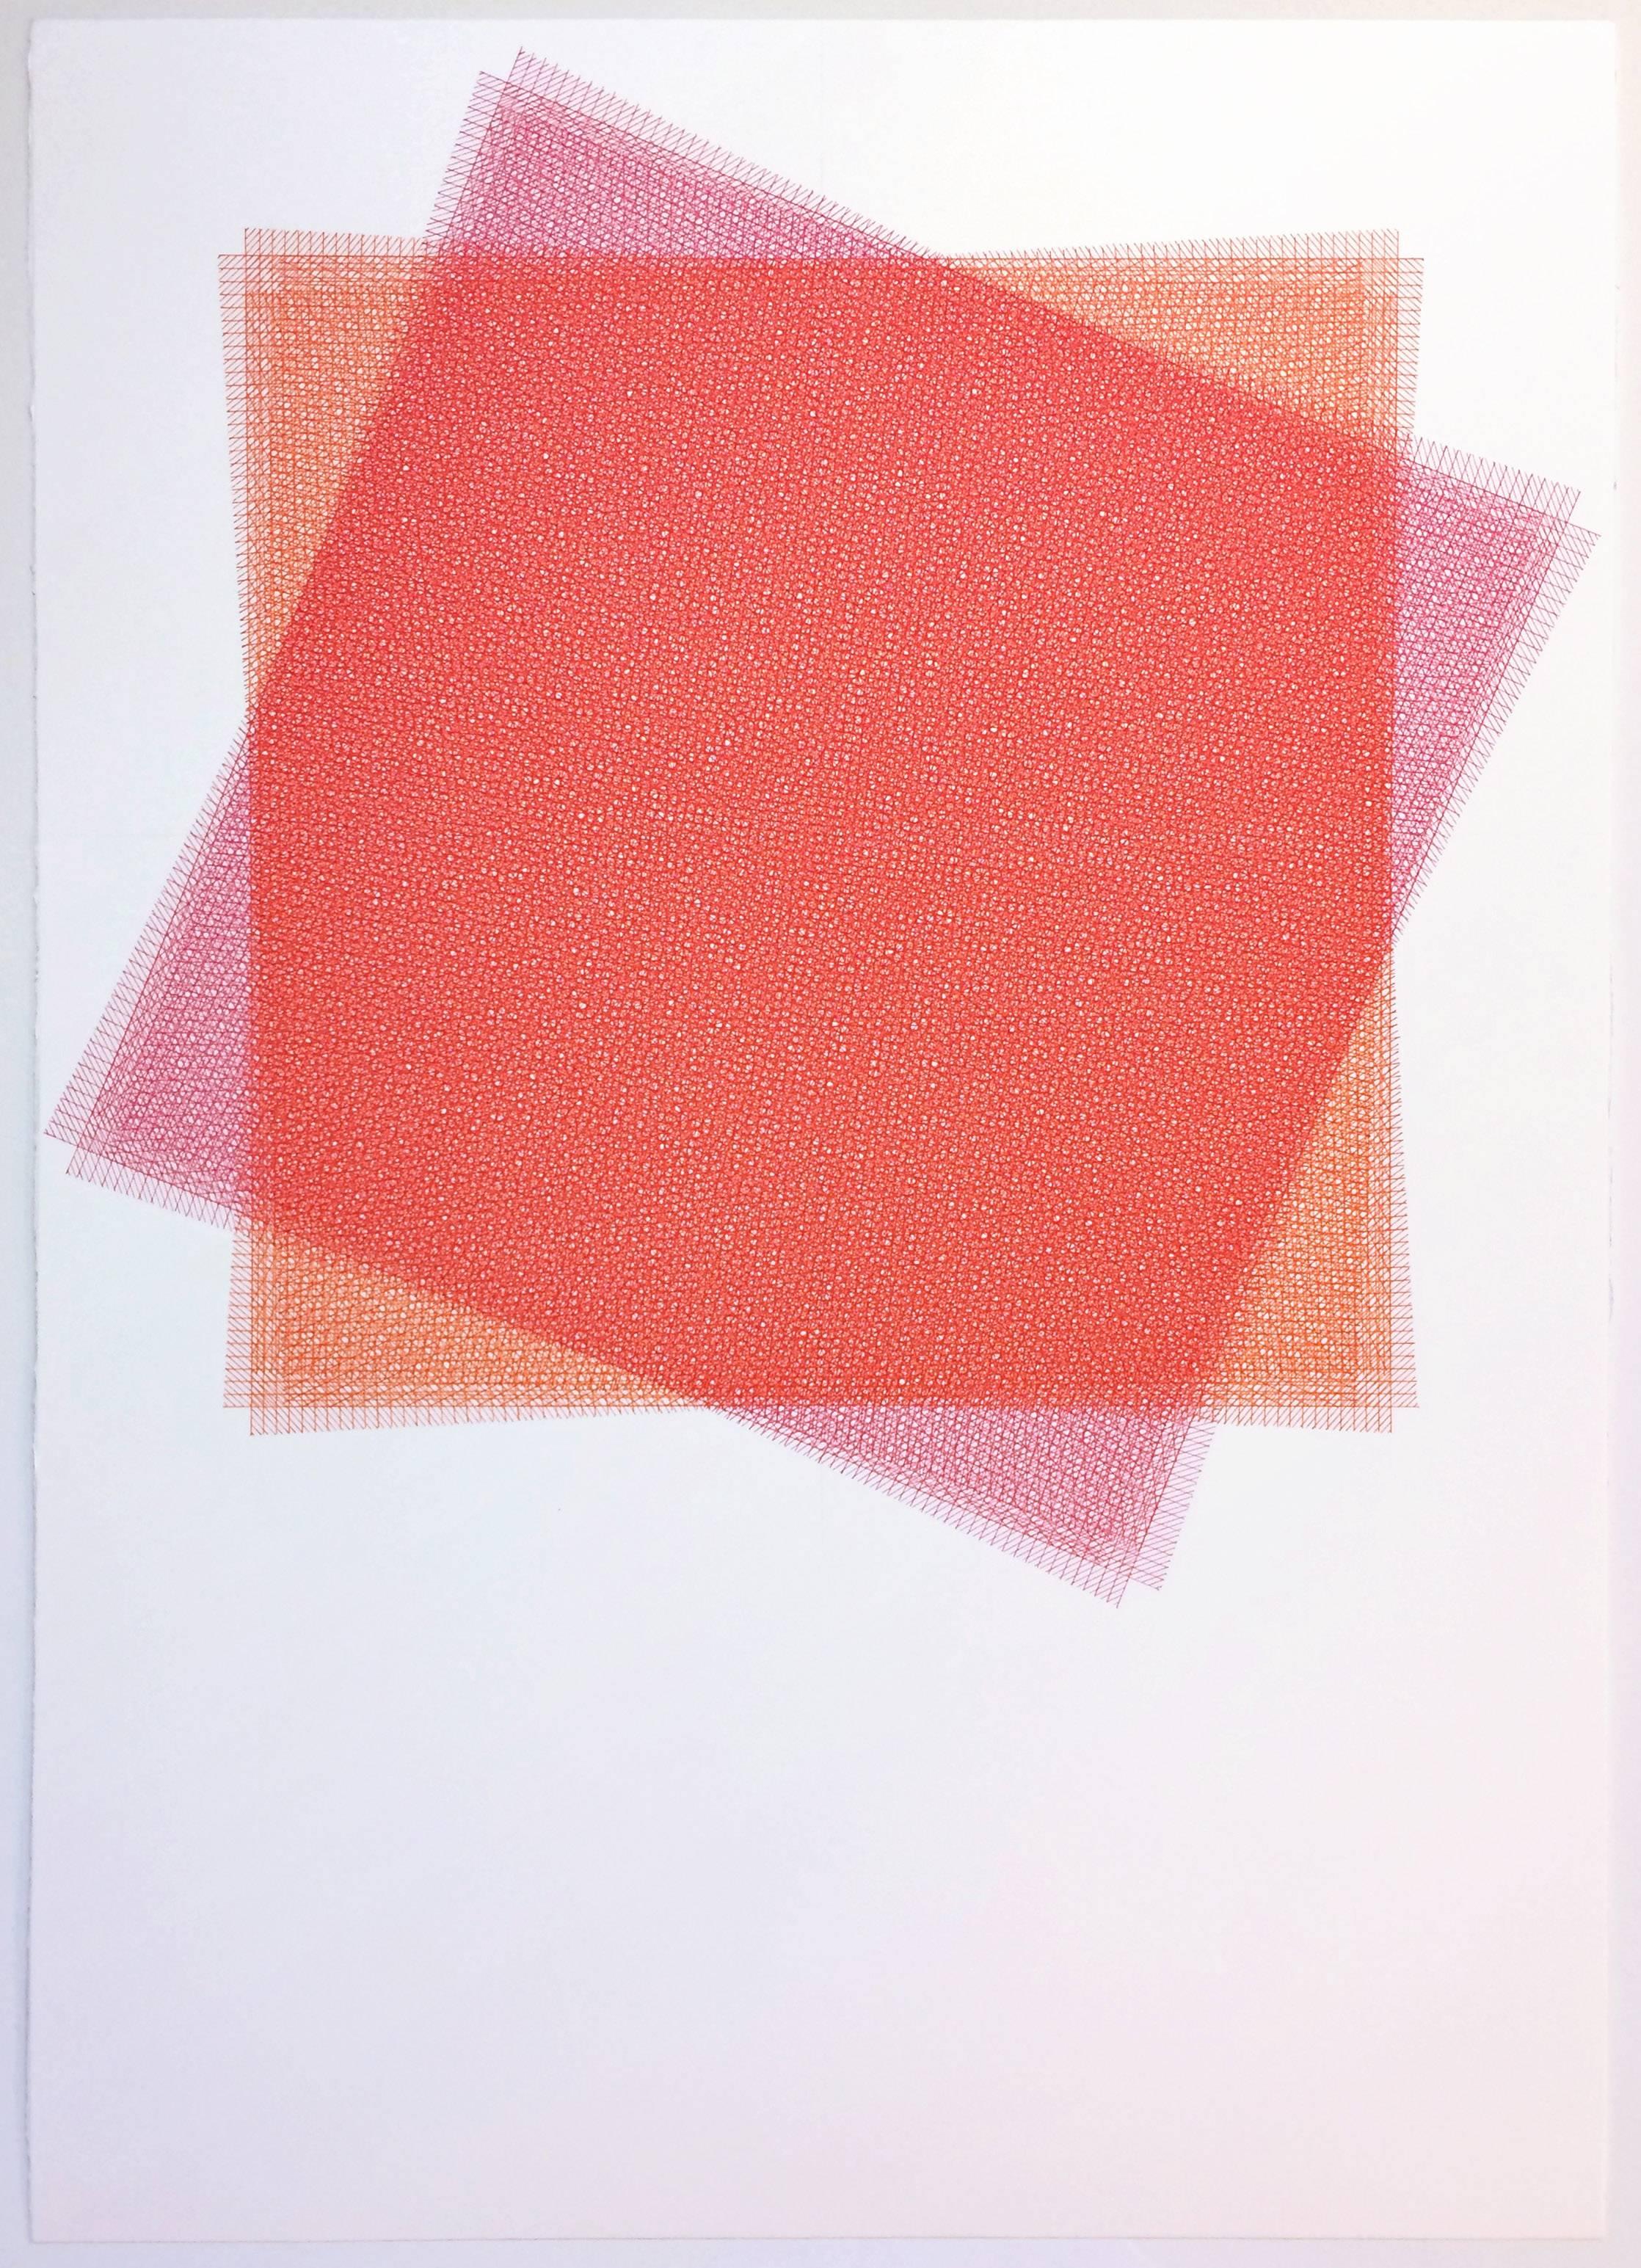 Sara Eichner, 16 Lagen, roter und rosafarbener Quadrat, 2015, Tinte, Rag Paper, Stift